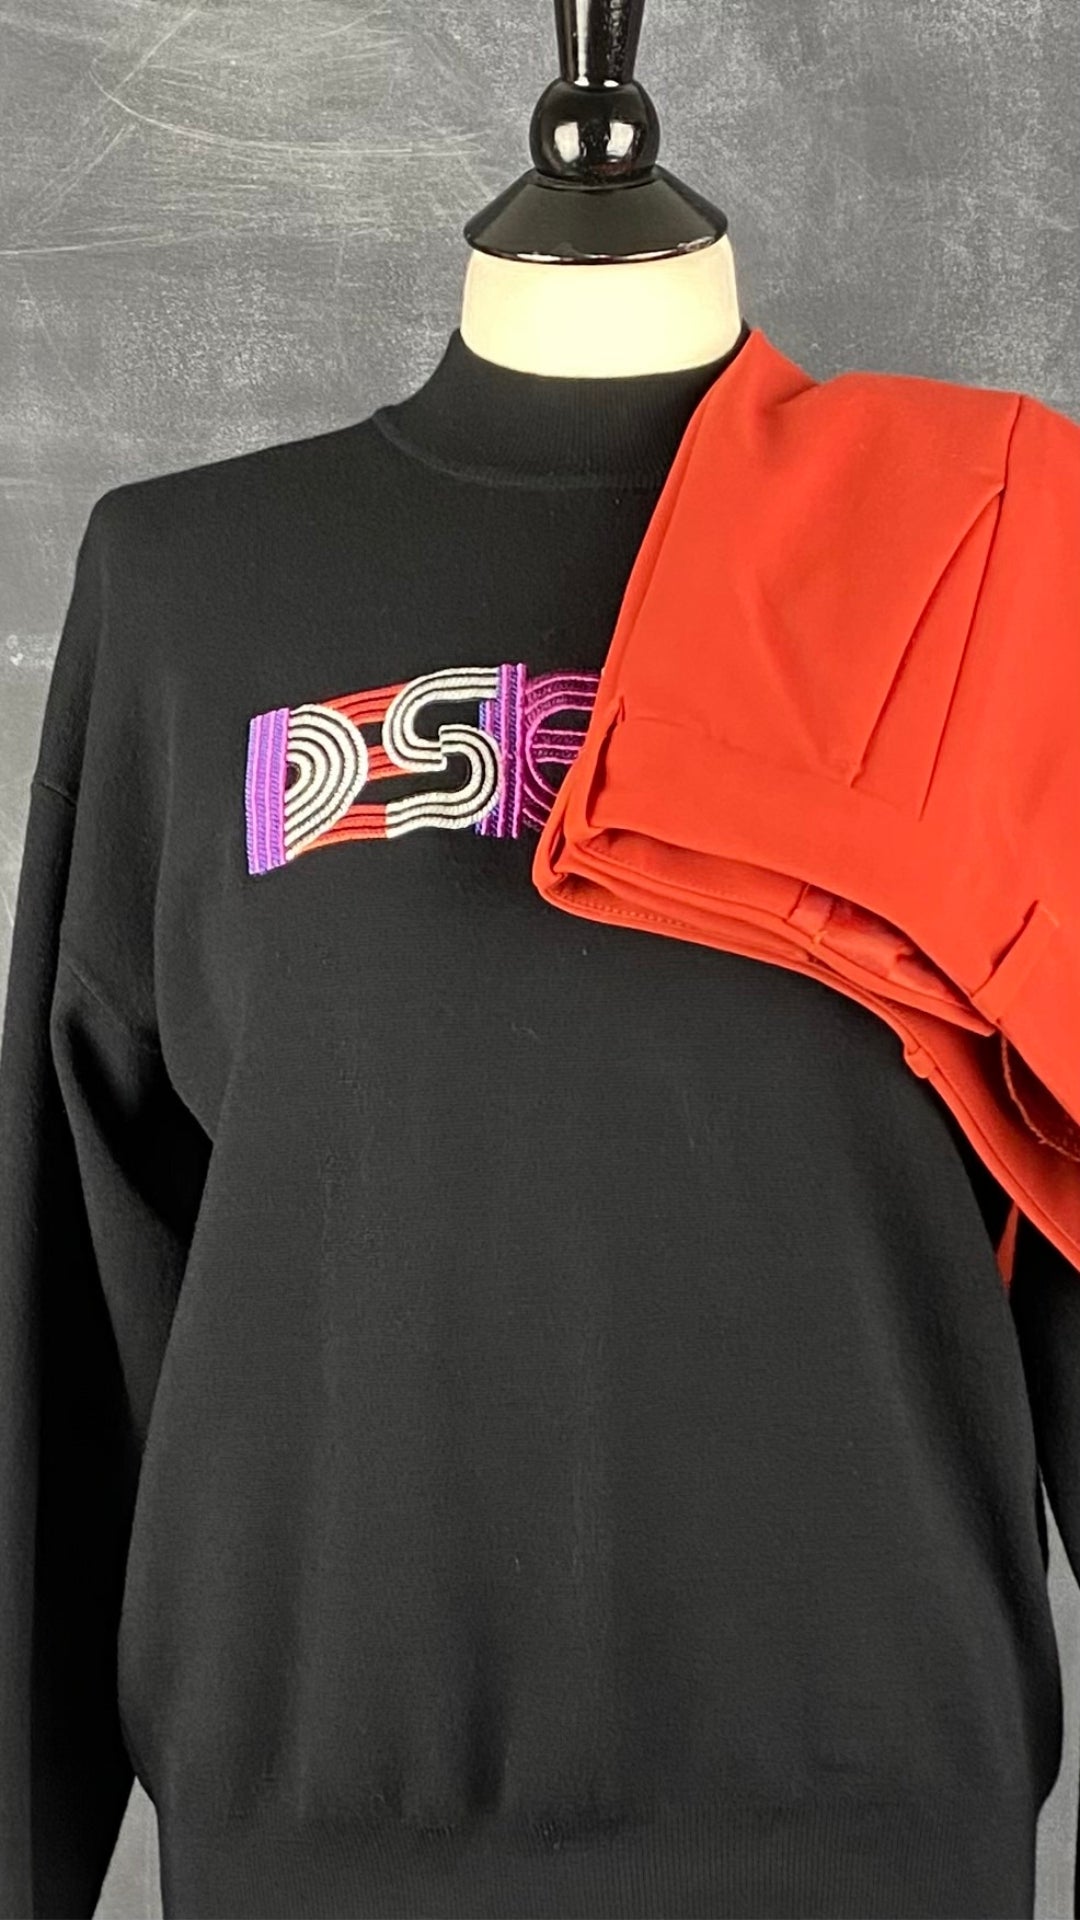 Chandail en tricot léger noir avec broderie Desigual, taille small. Vue de l'agencement avec le pantalon orangé Club Monaco.